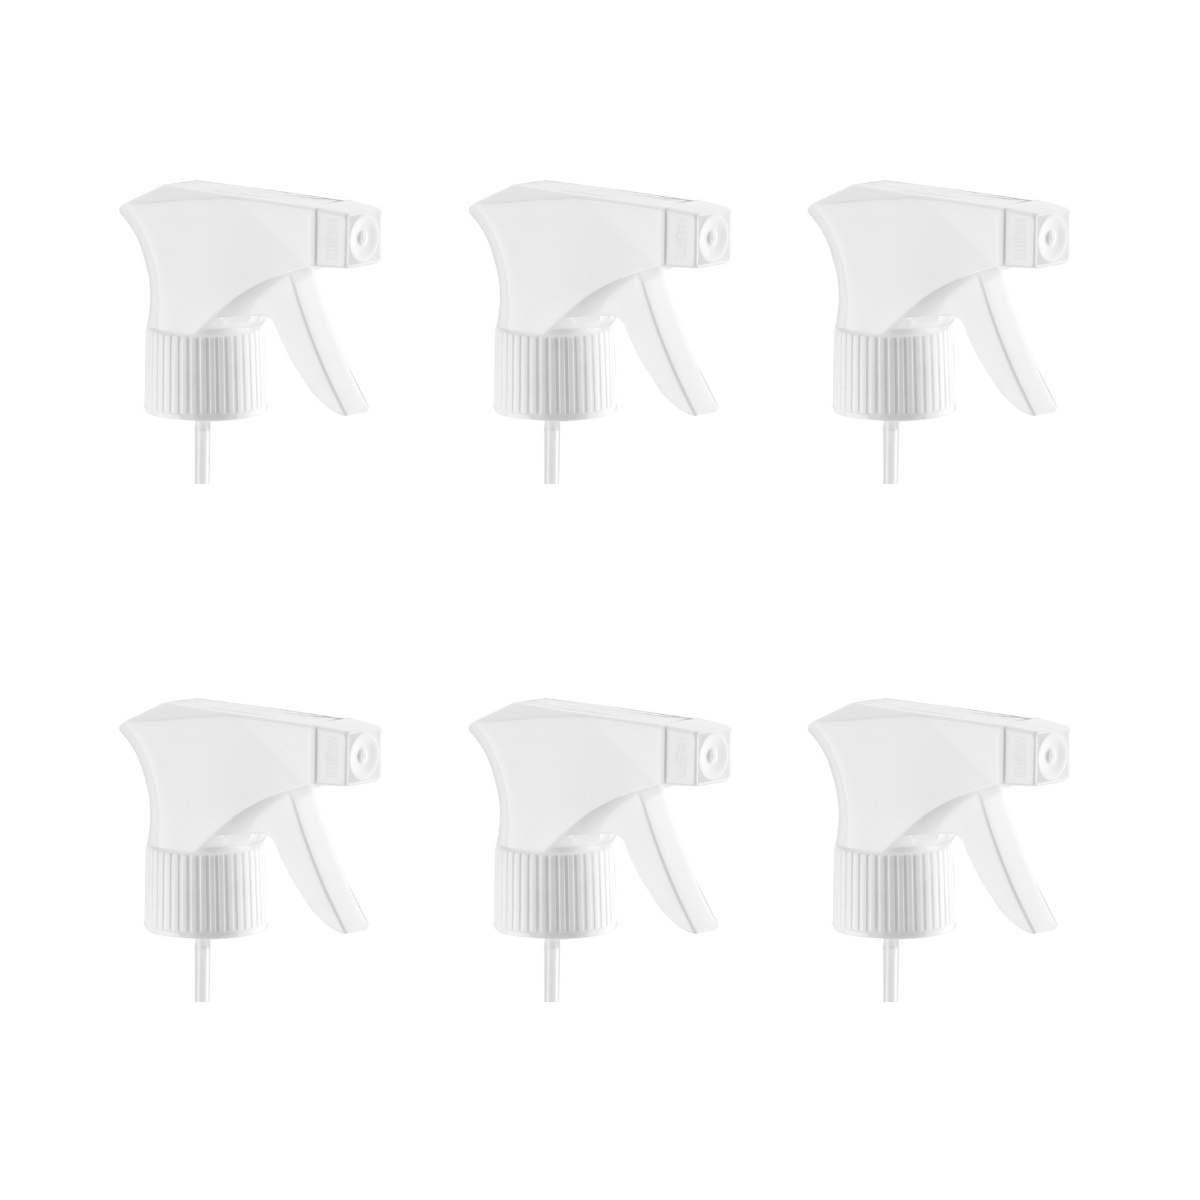 Válvulas Pulverizadores de Gatillo Dompel, color blanco, rosca 28/410, fabricados con resortes de acero inoxidable y bolas de vidrio, con rociador y chorro Modelo 101D - depilcompany